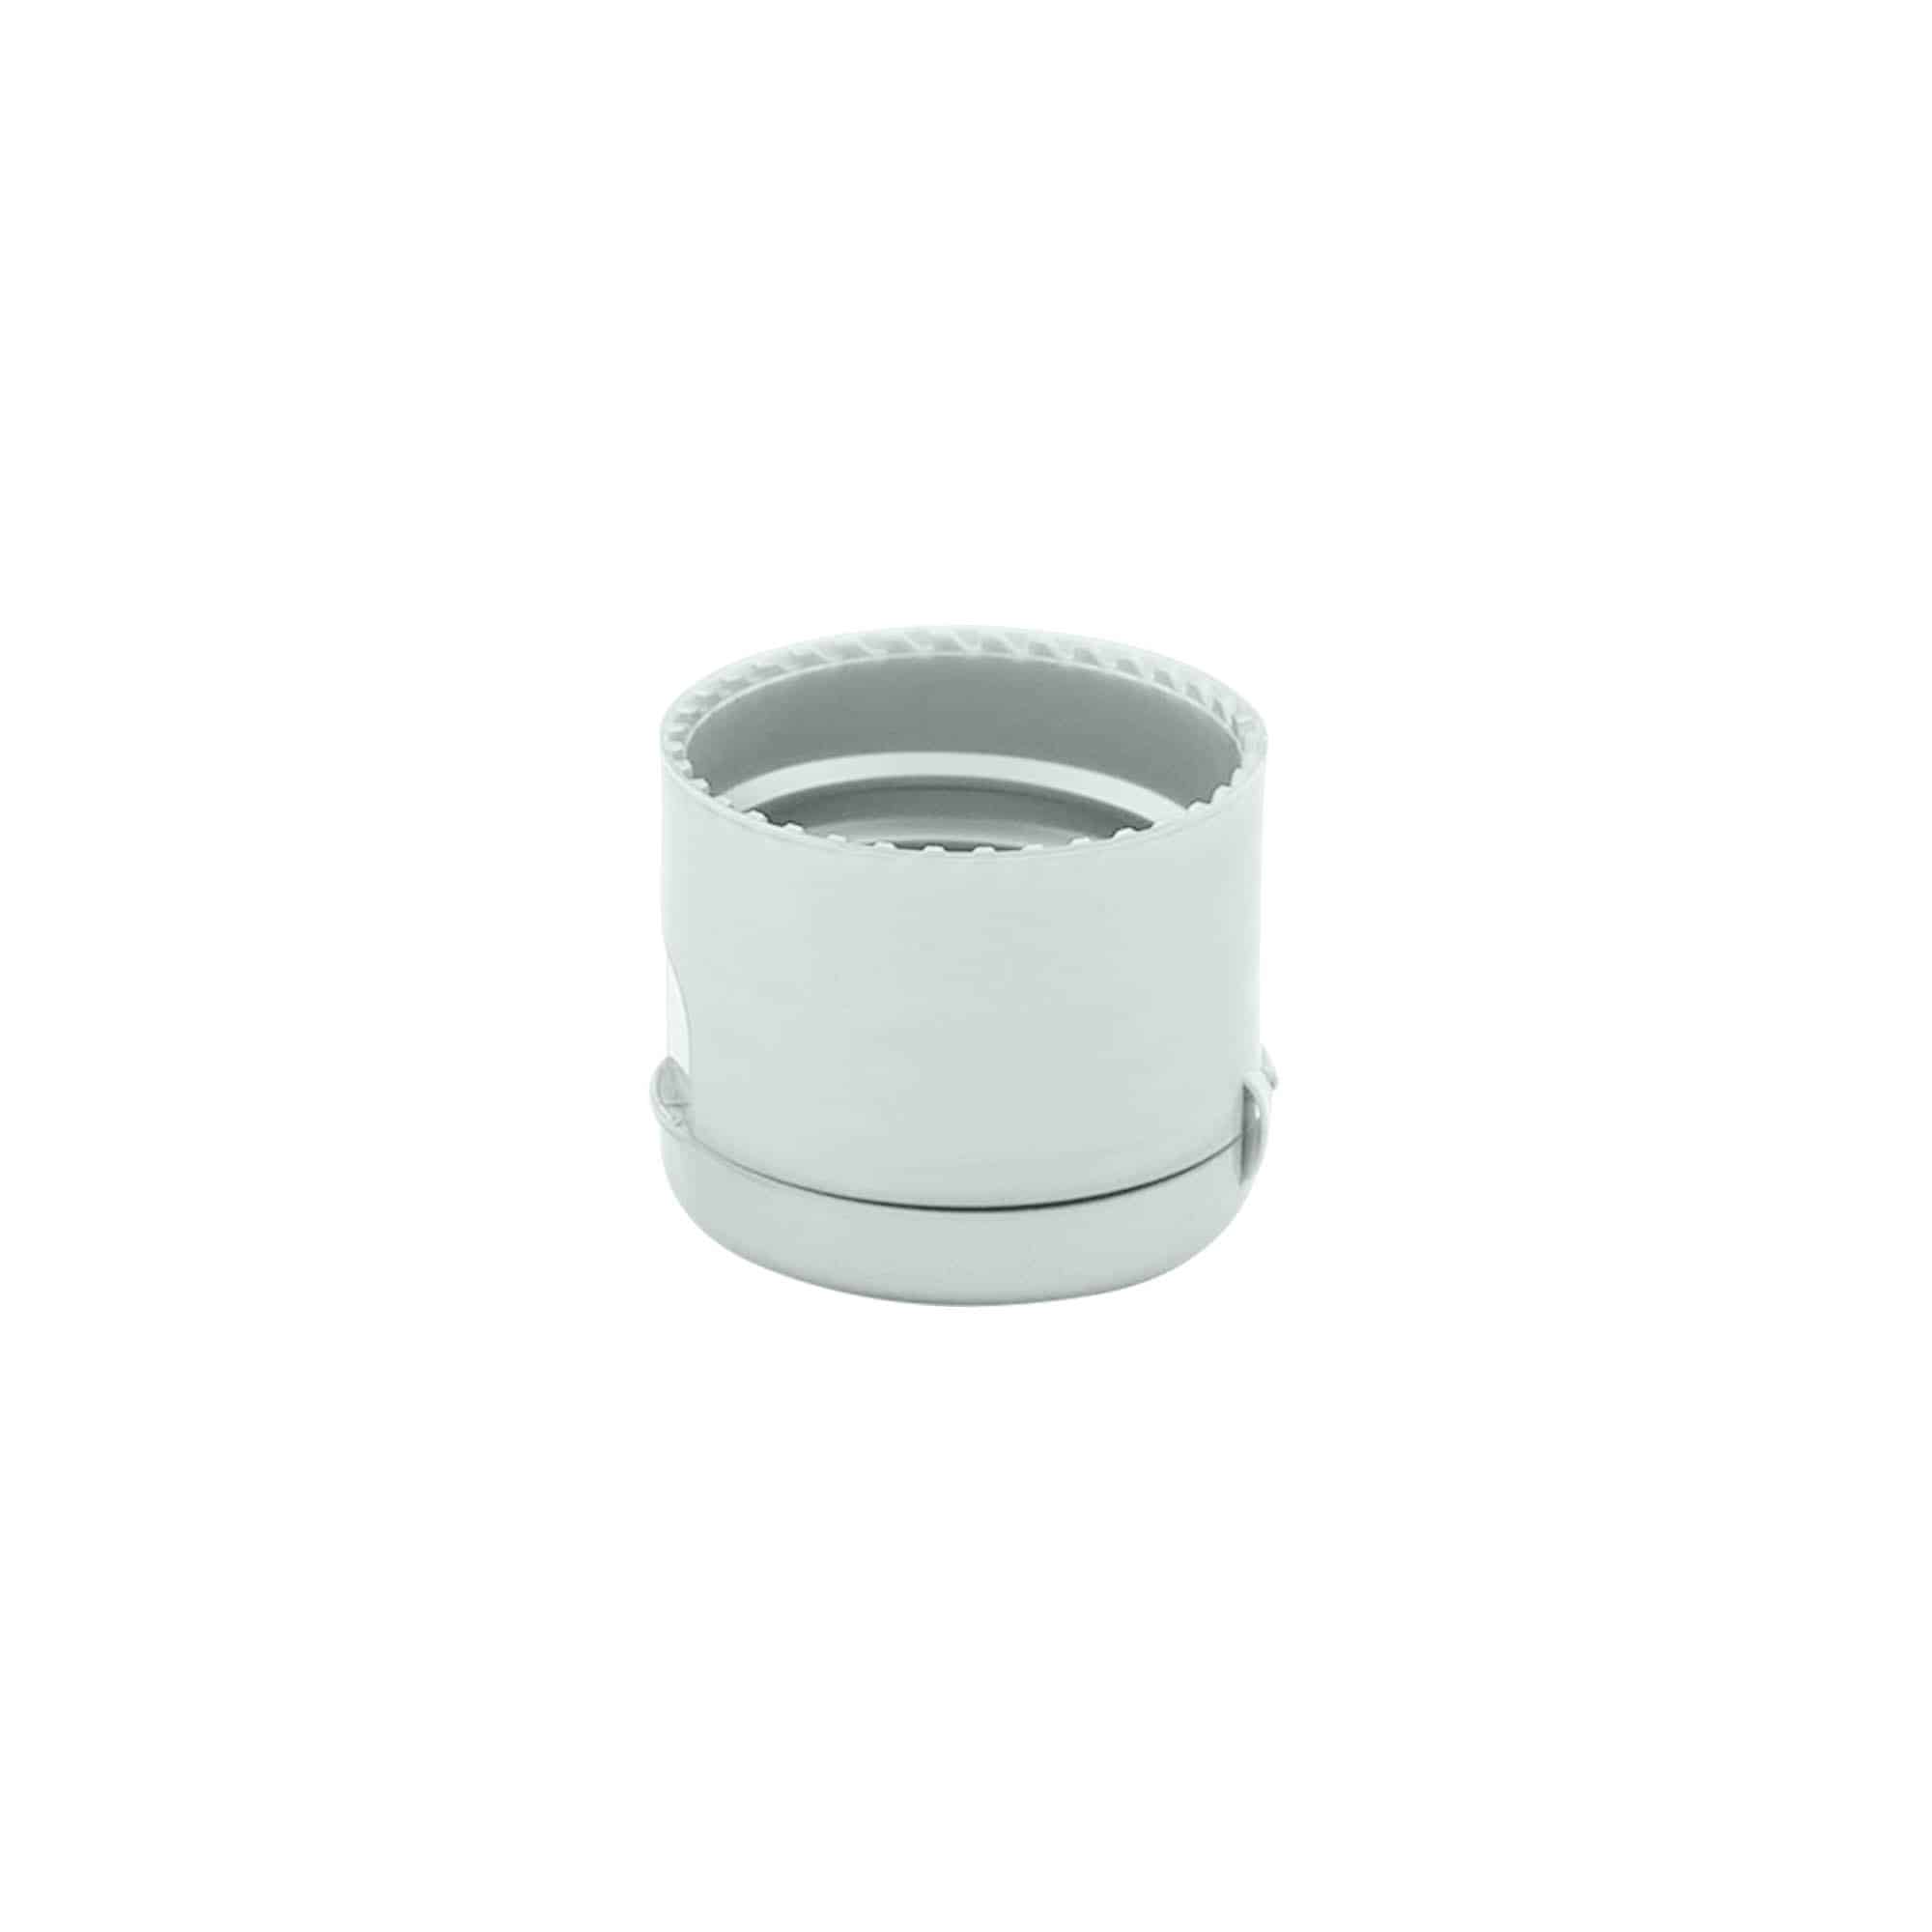 Šroubovací uzávěr s výklopnou krytkou, plast PP, stříbrný, pro ústí: GPI 24/410